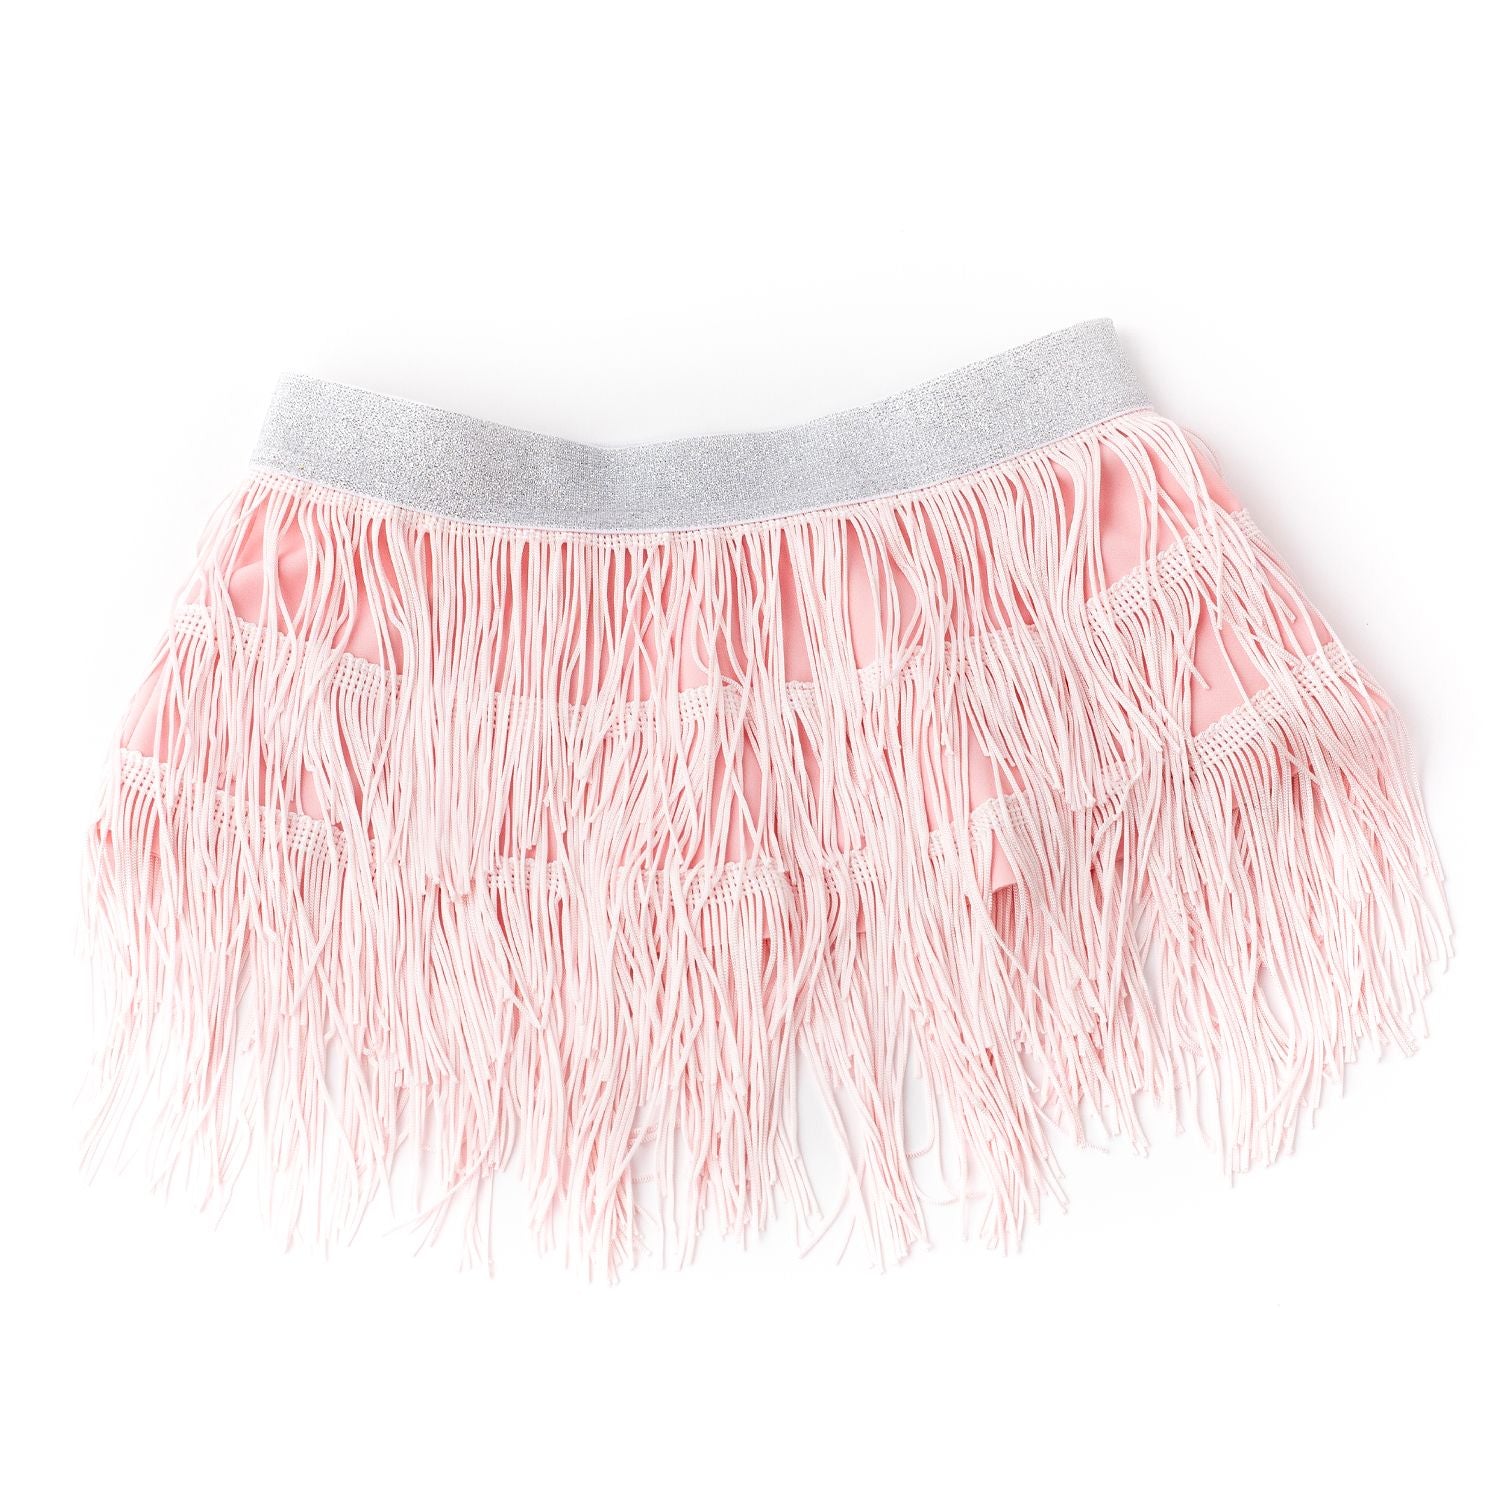 Light Pink Fringe Skirt Cover Up